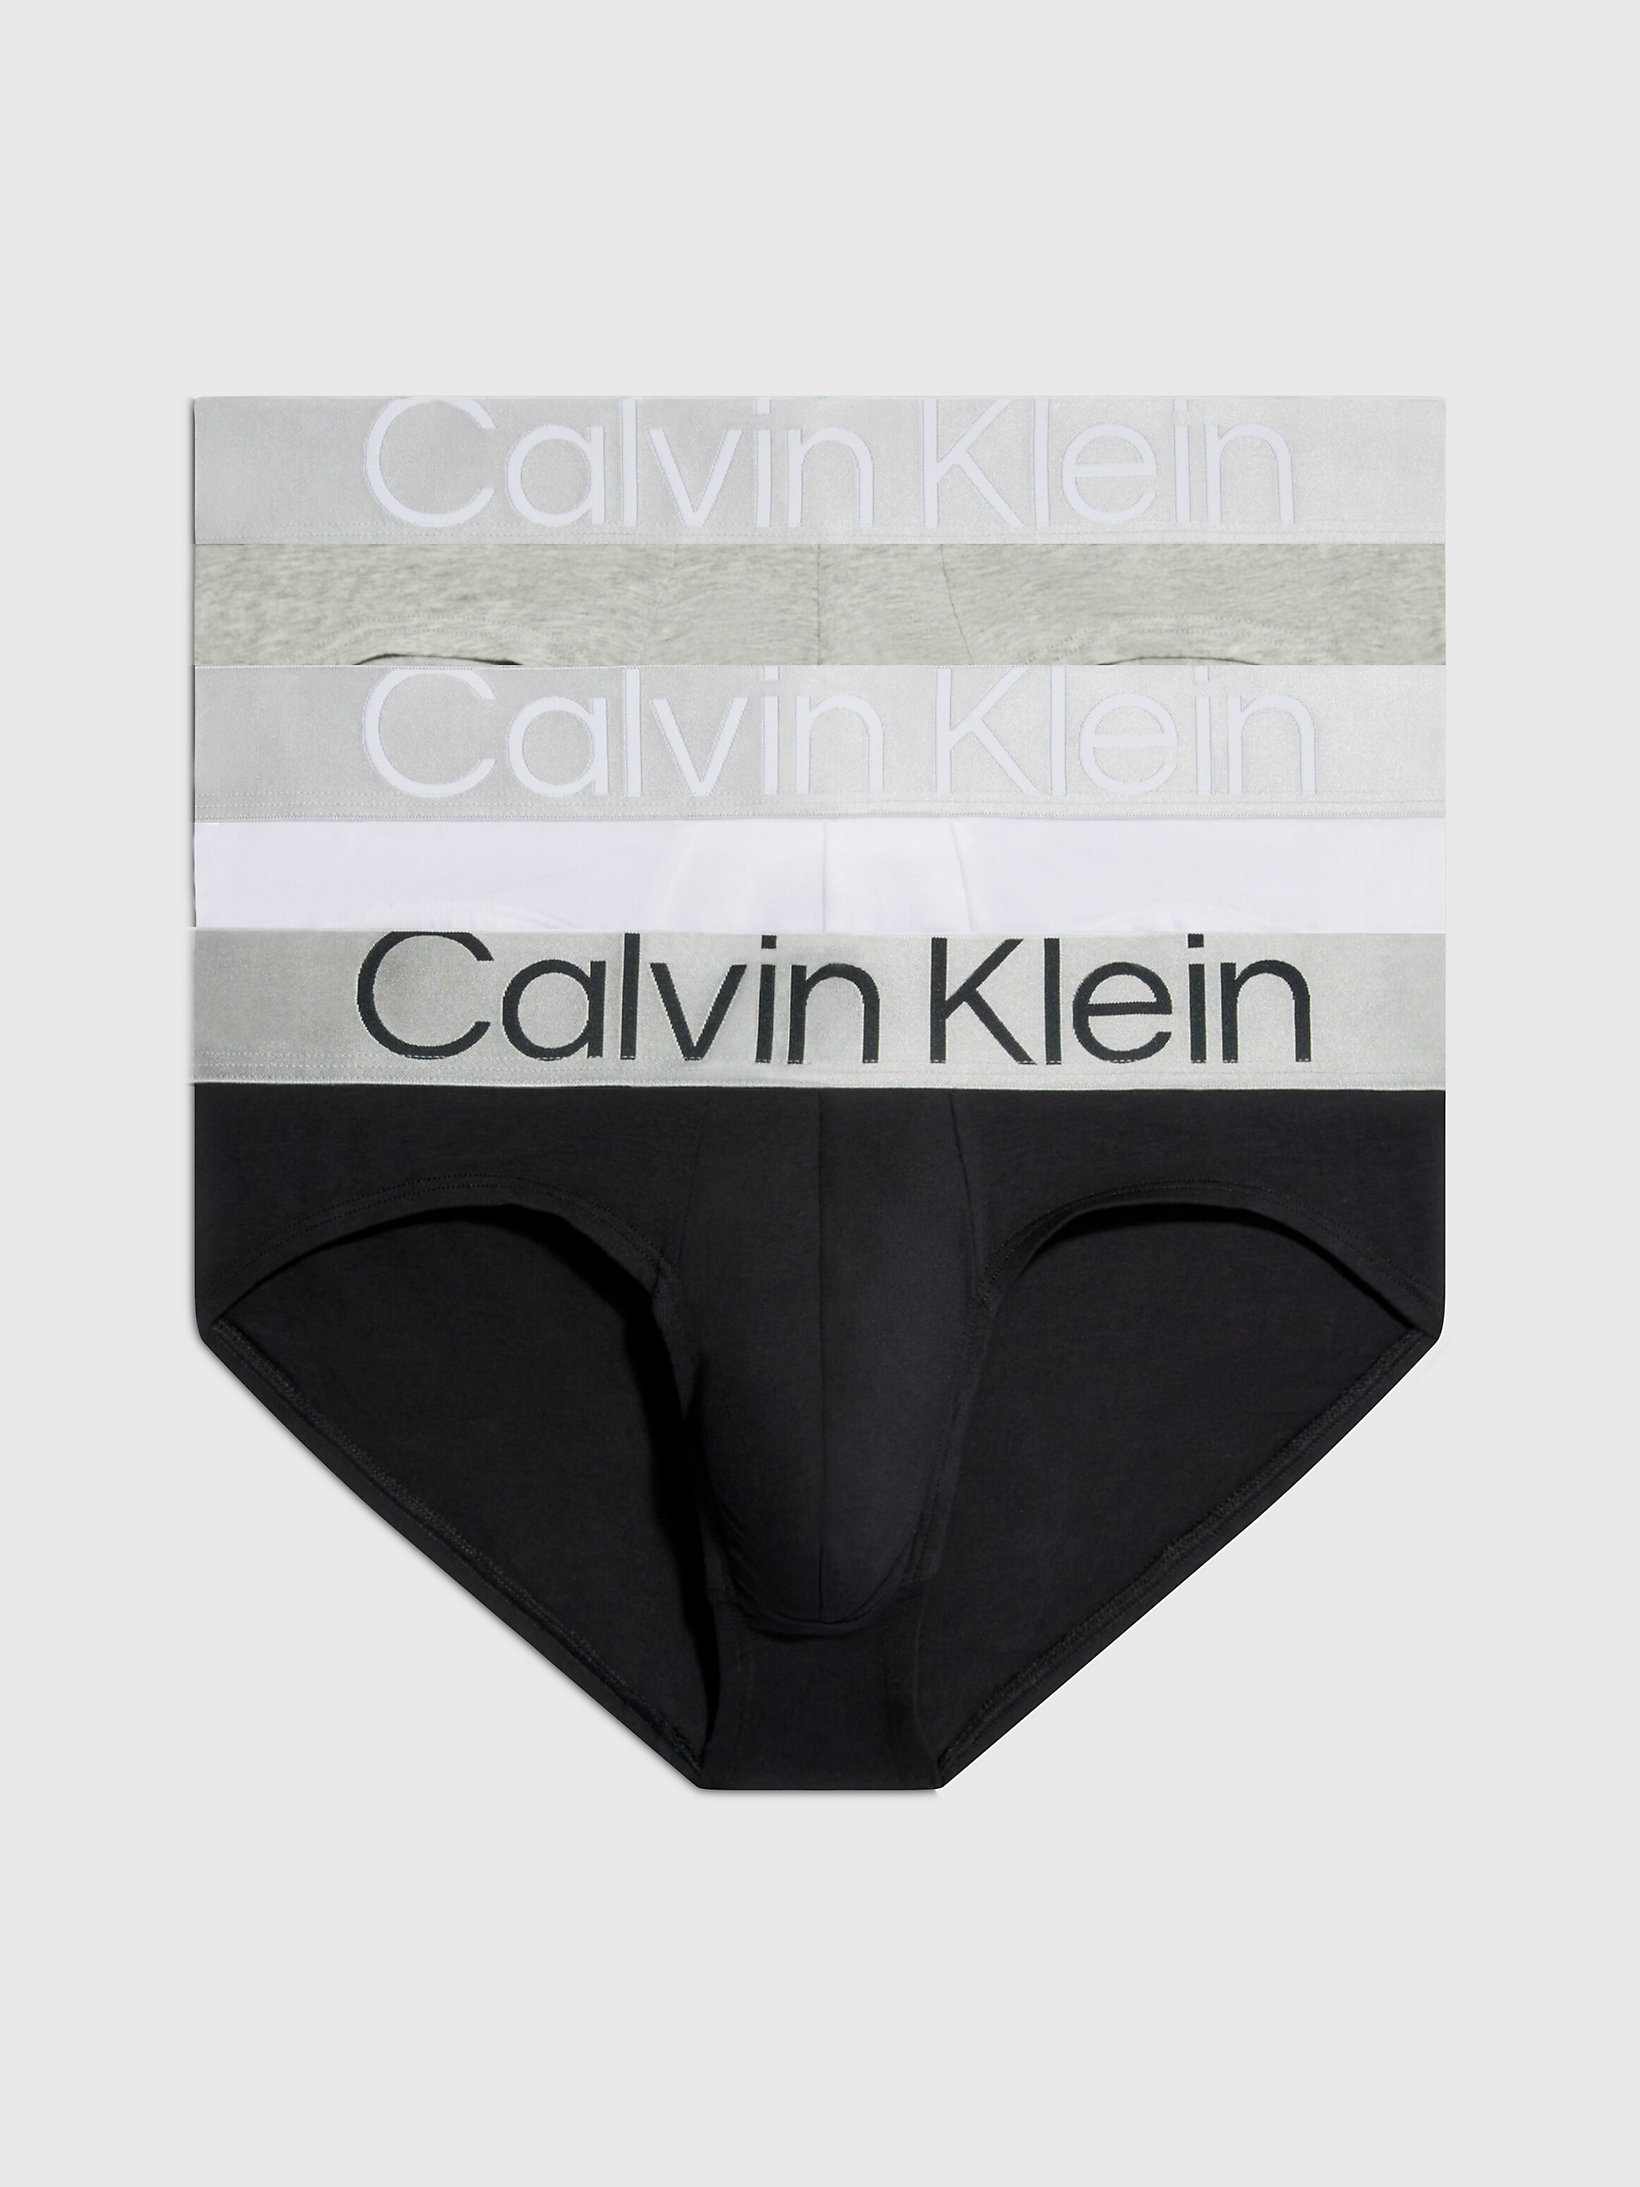 Pack De 3 Slips - Steel Cotton > Black/white/grey Heather > undefined mujer > Calvin Klein